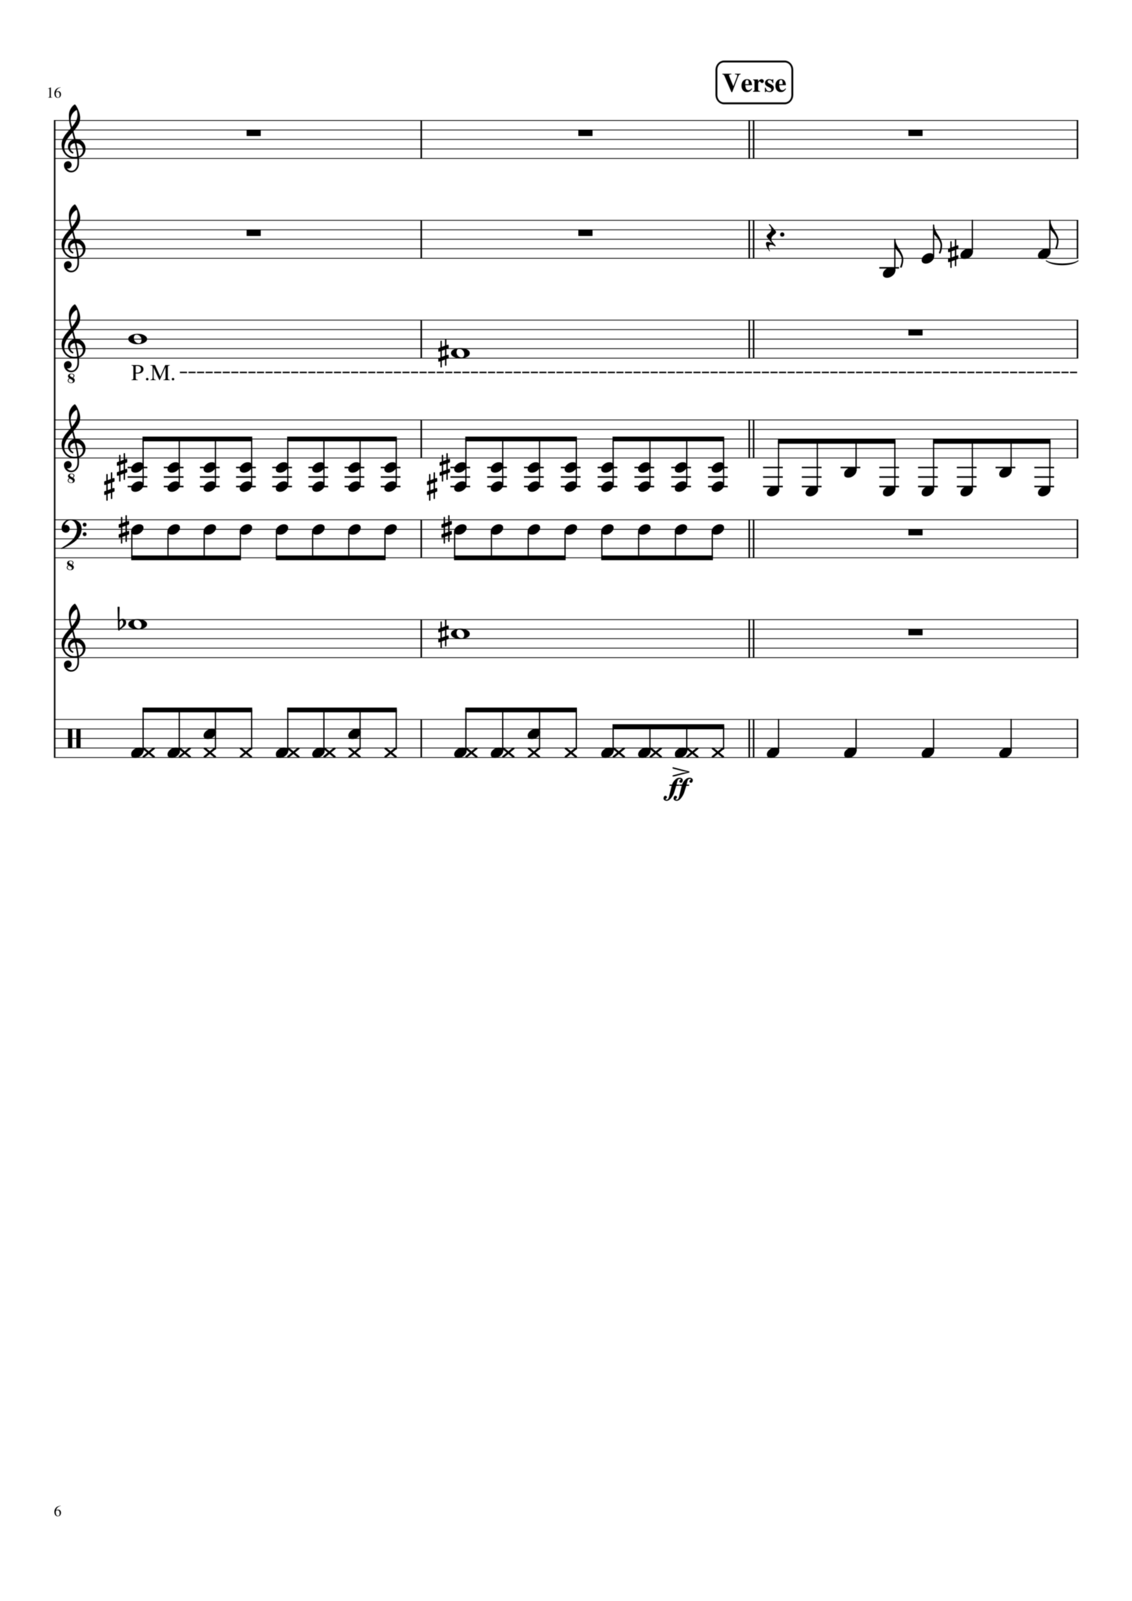 Vechnaya prizrachnaya vstrechnaya slide, Image 30